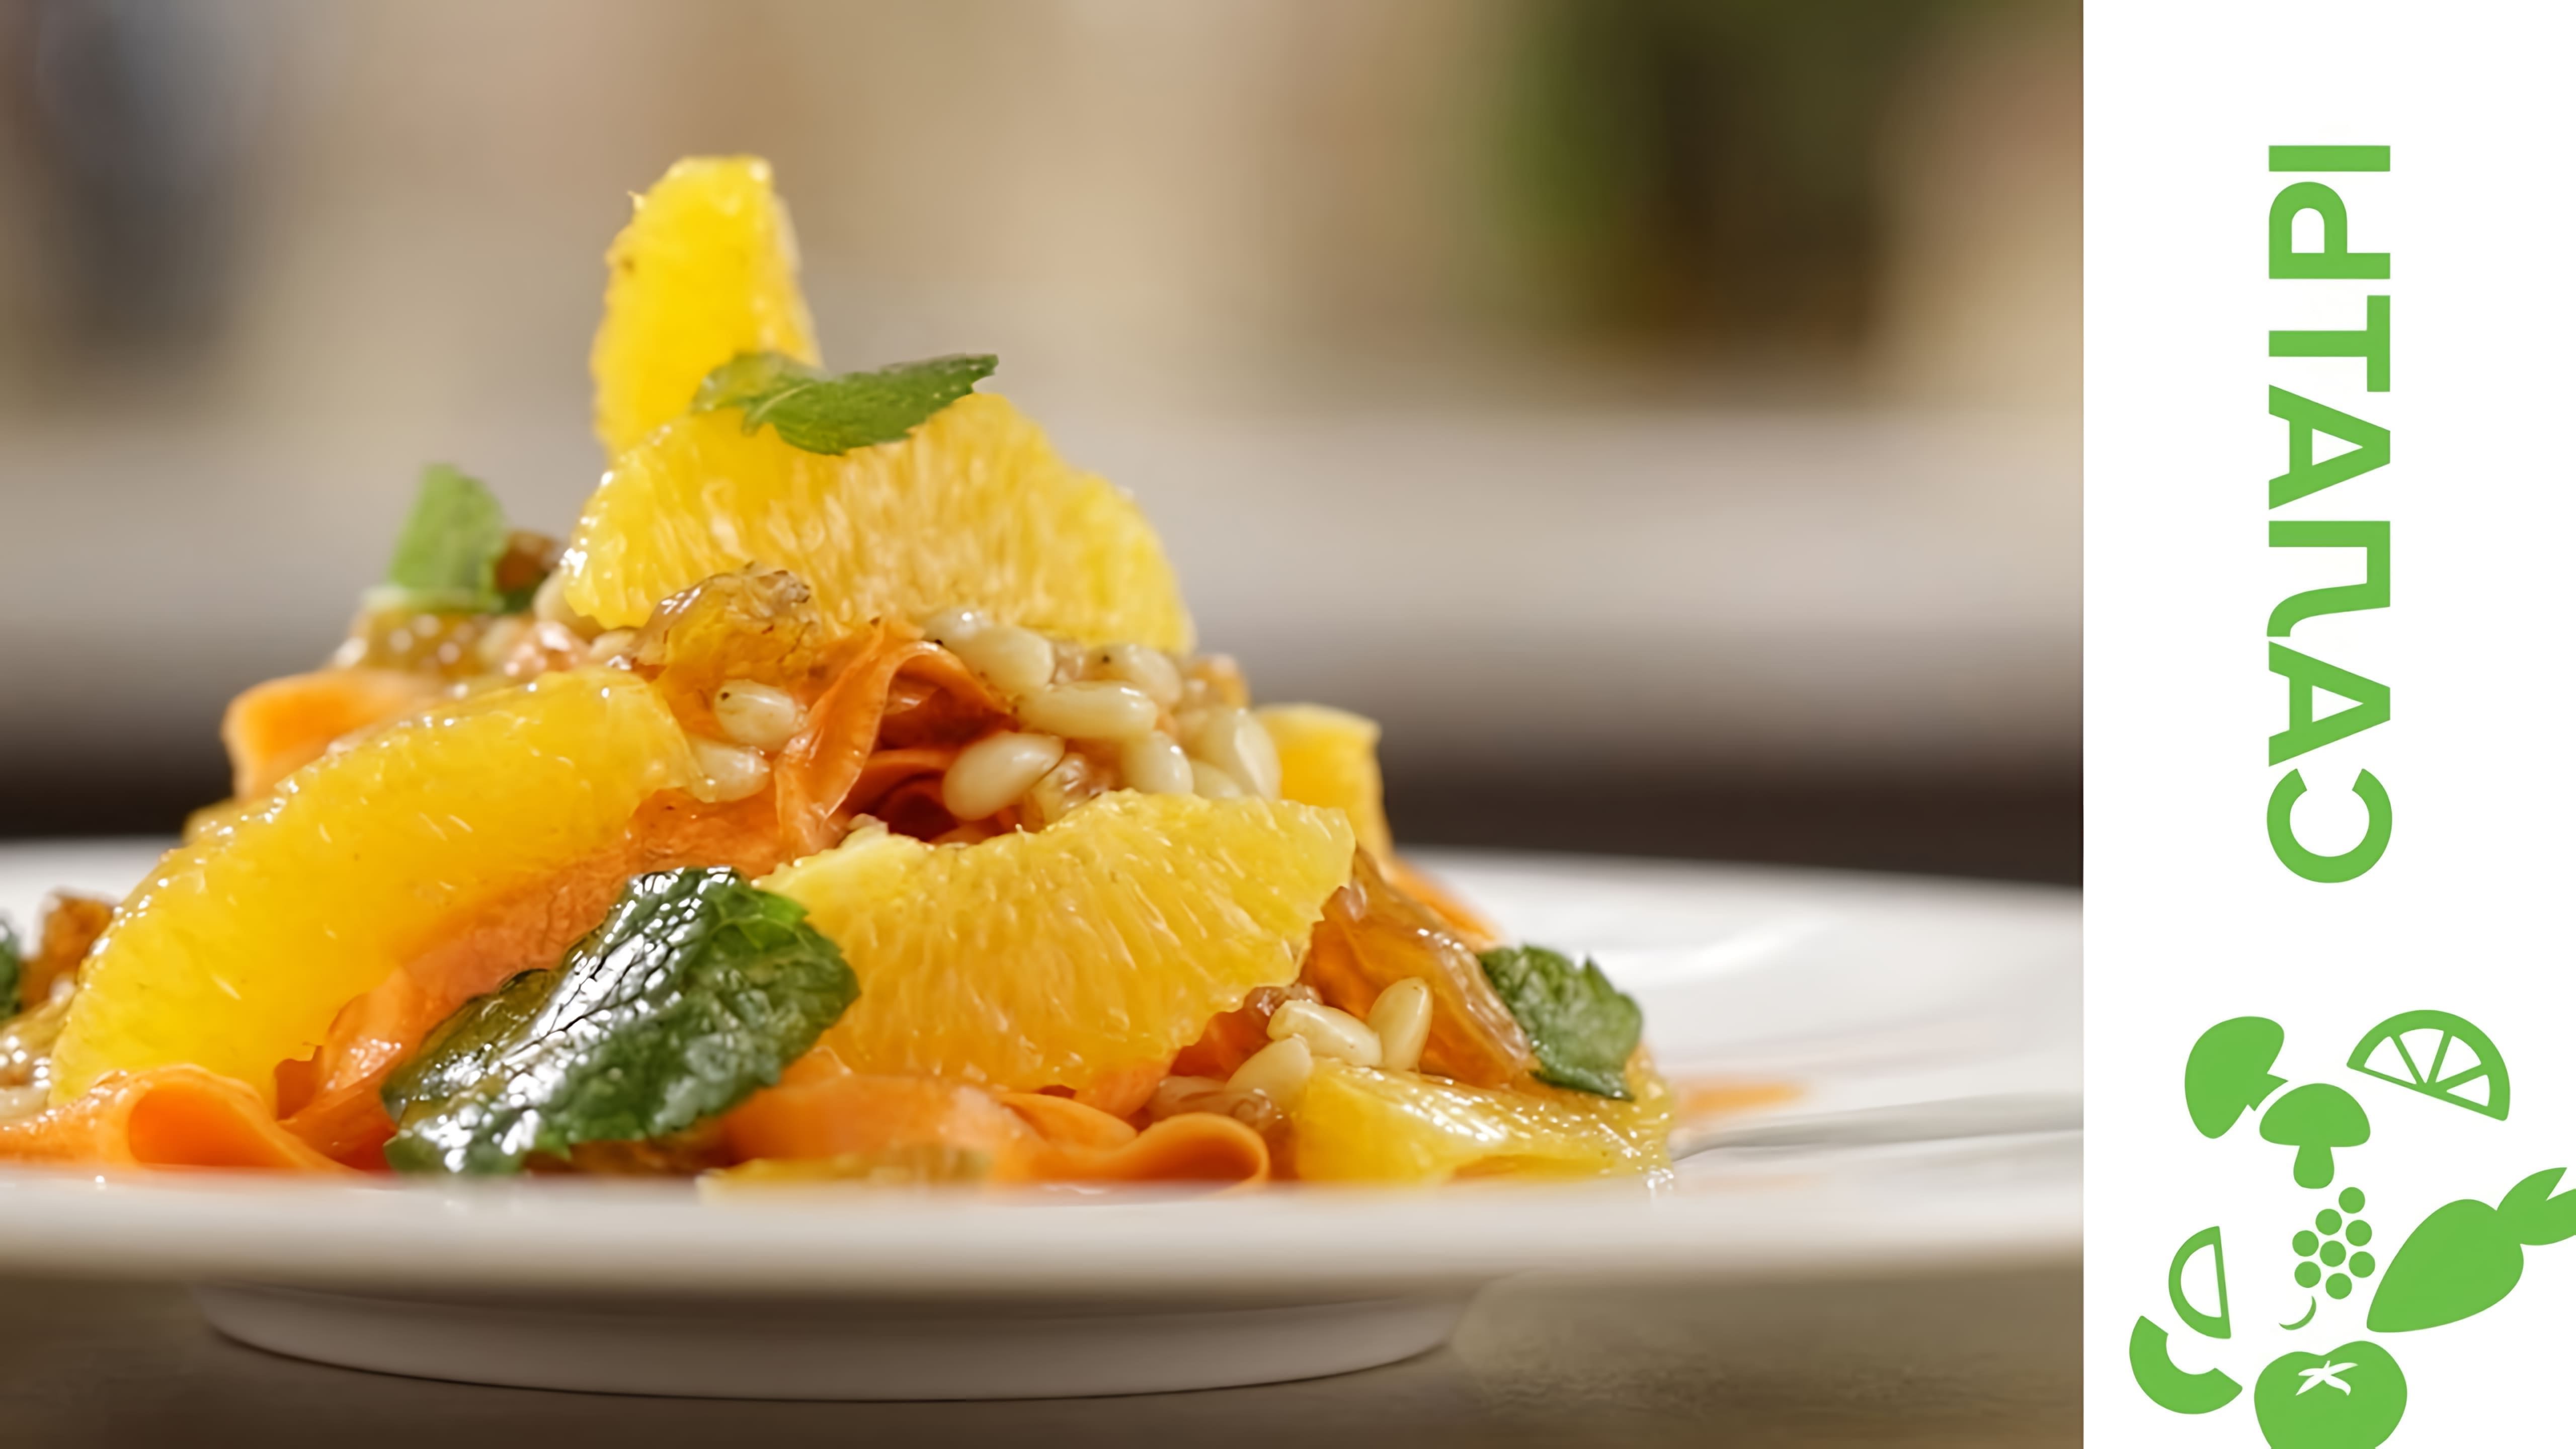 Видео-ролик под названием "Тосканский салат с фенхелем, апельсинами и орешками" представляет собой кулинарное шоу, где шеф-повар демонстрирует процесс приготовления вкусного и полезного салата